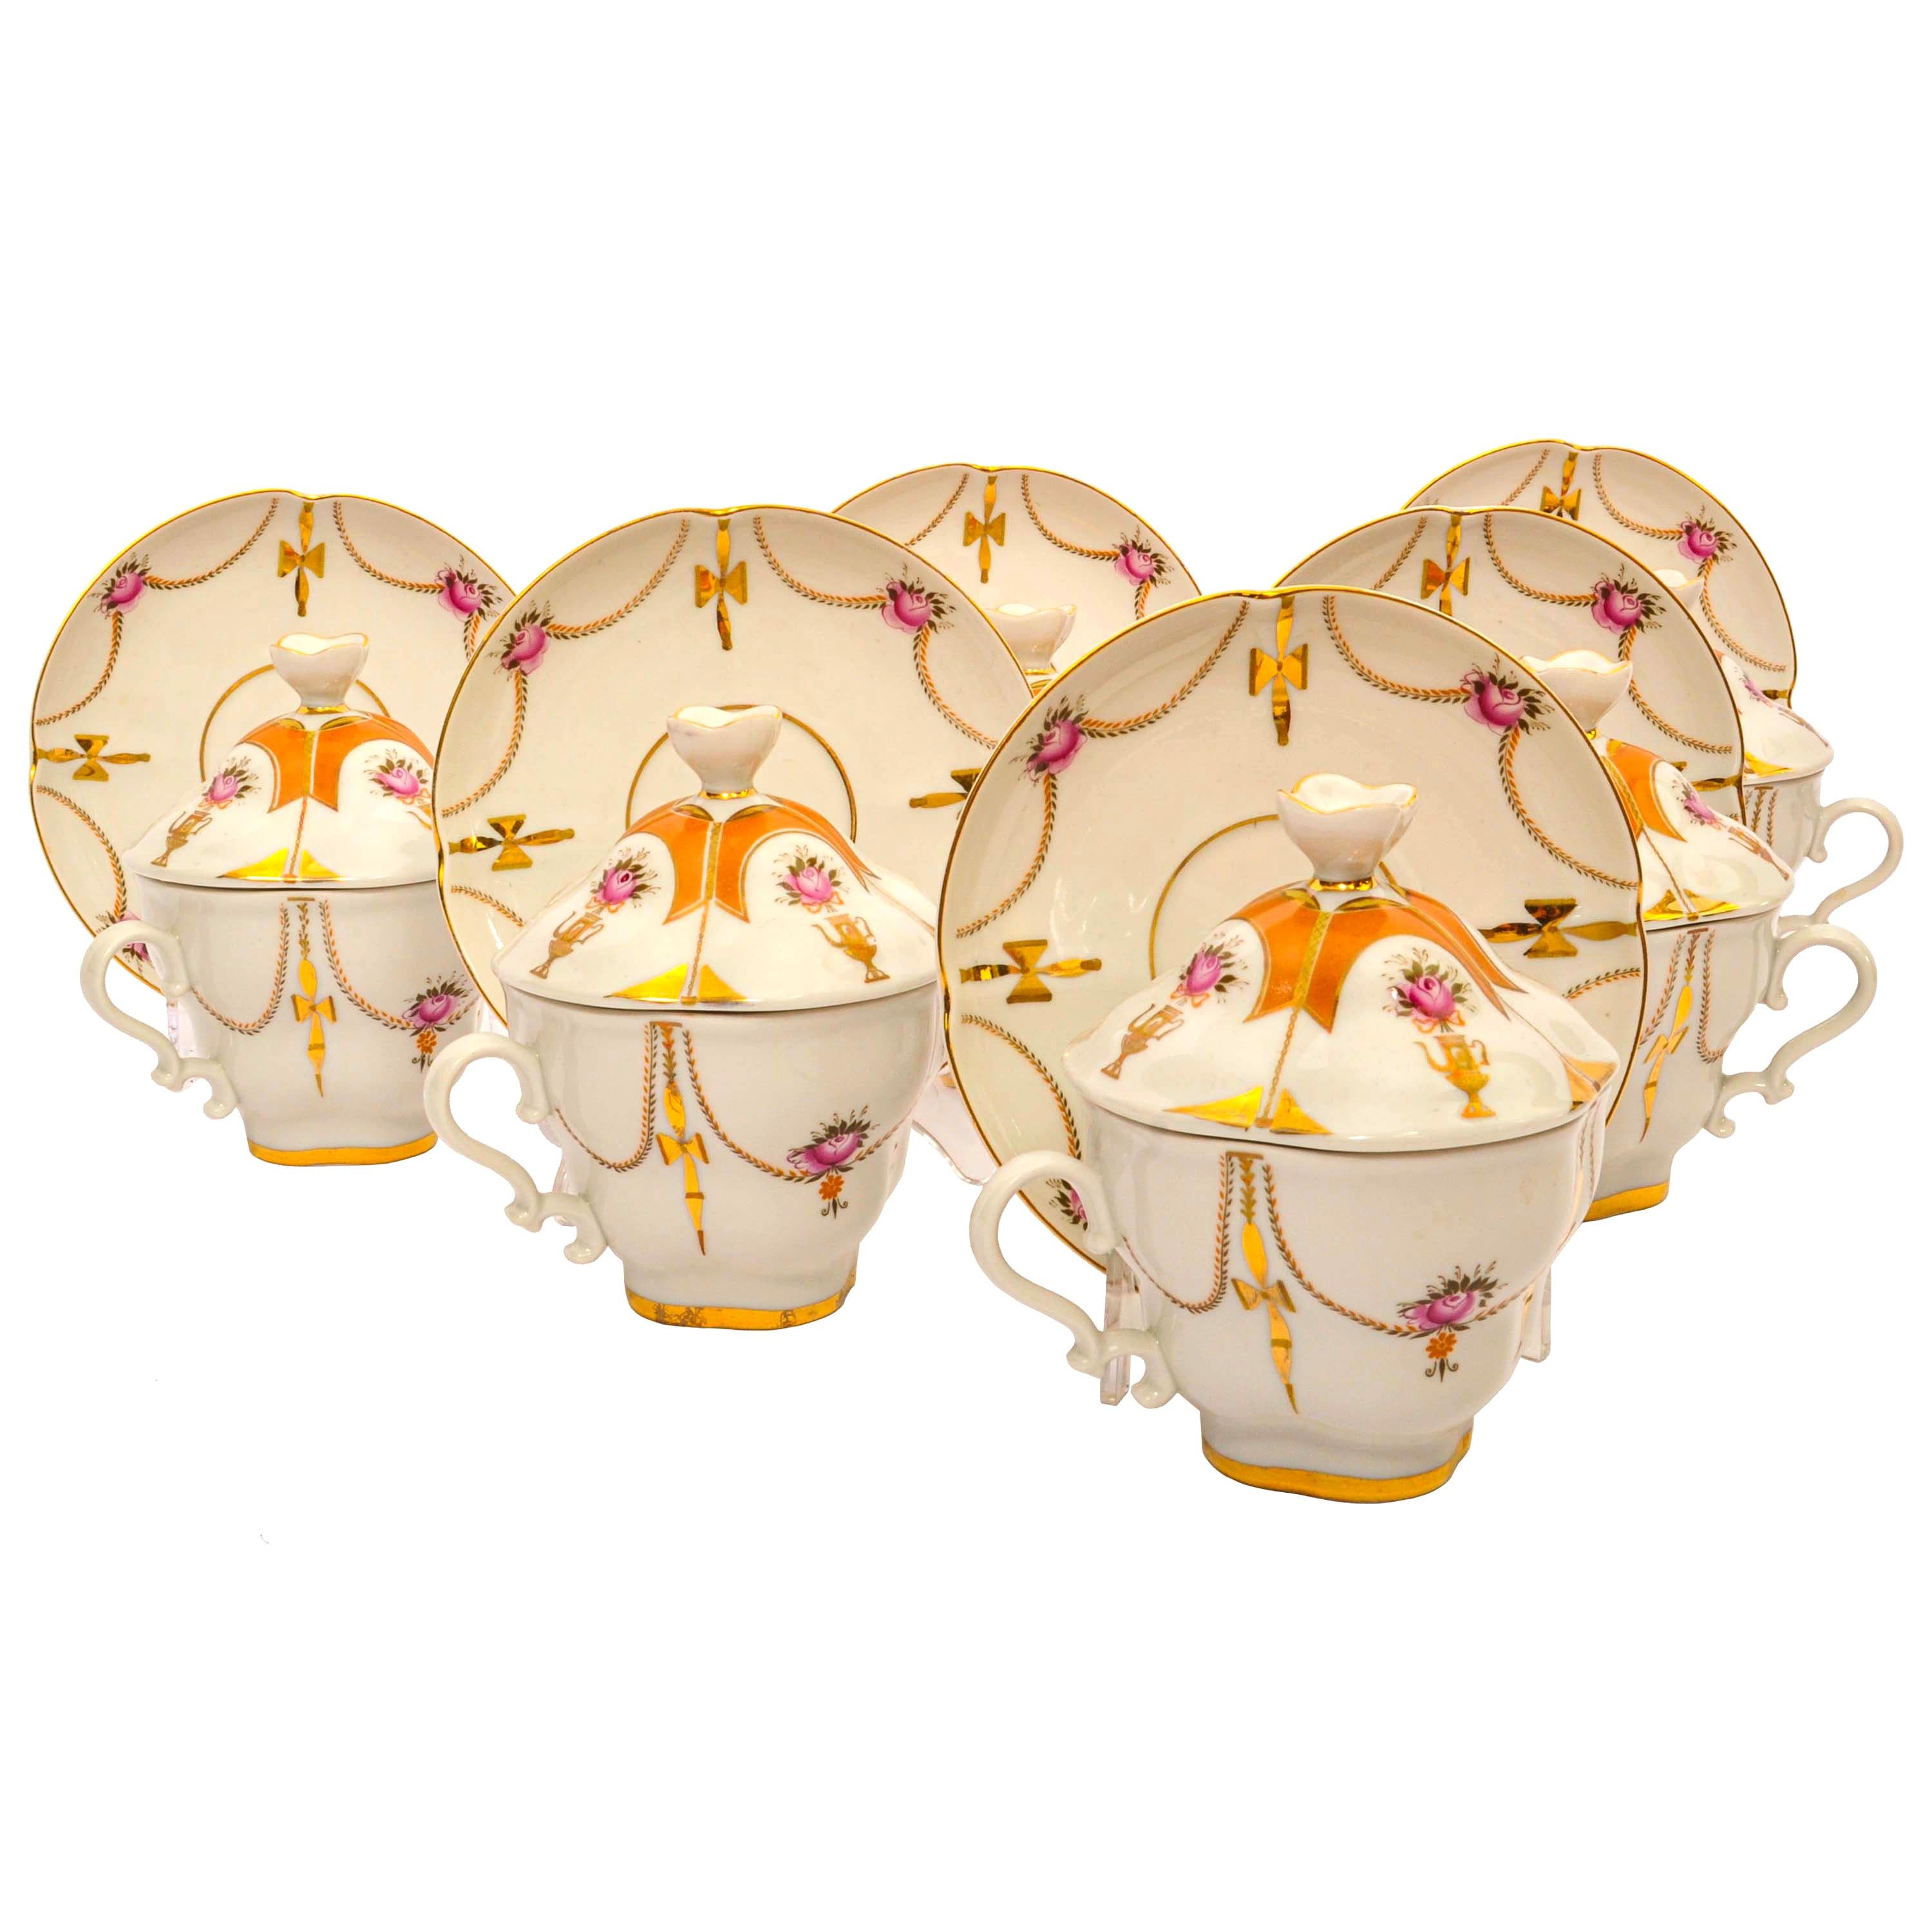 Vintage set of six Imperial Lomonosov Handpaintted Gilt Porcelain tea cups & saucers with covers, comprising 18 pieces. 
L'ensemble est en parfait état, chaque tasse et soucoupe est décorée à la main de guirlandes et de samovars, avec des fleurs